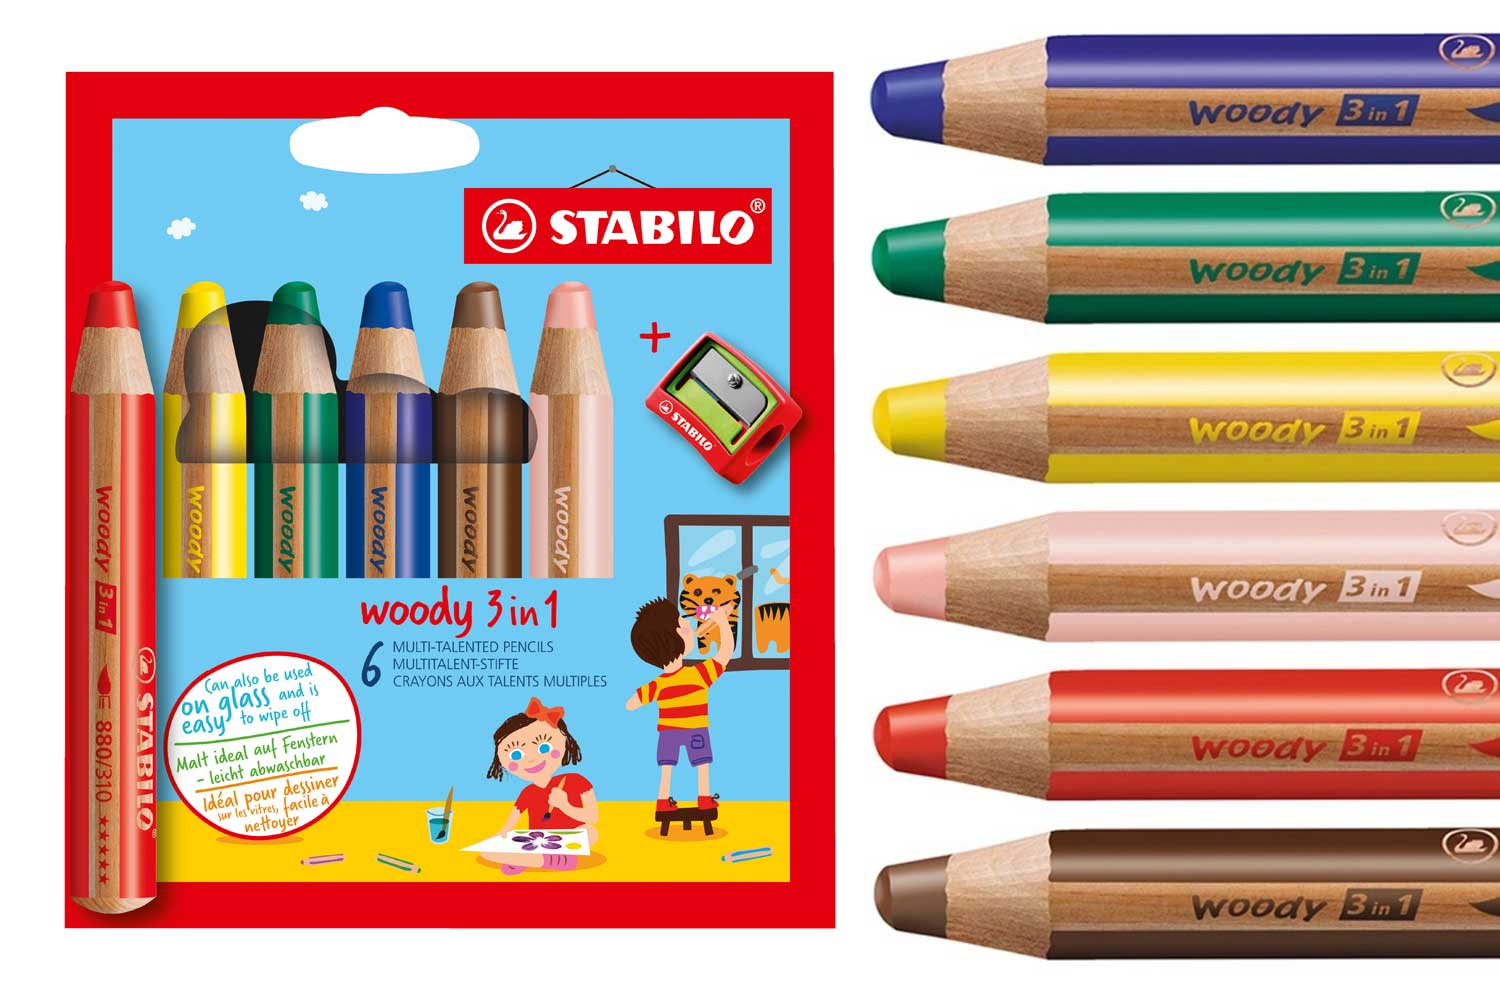 Coffret de 36 crayons de couleur POSCA Pencil - Couleurs assorties